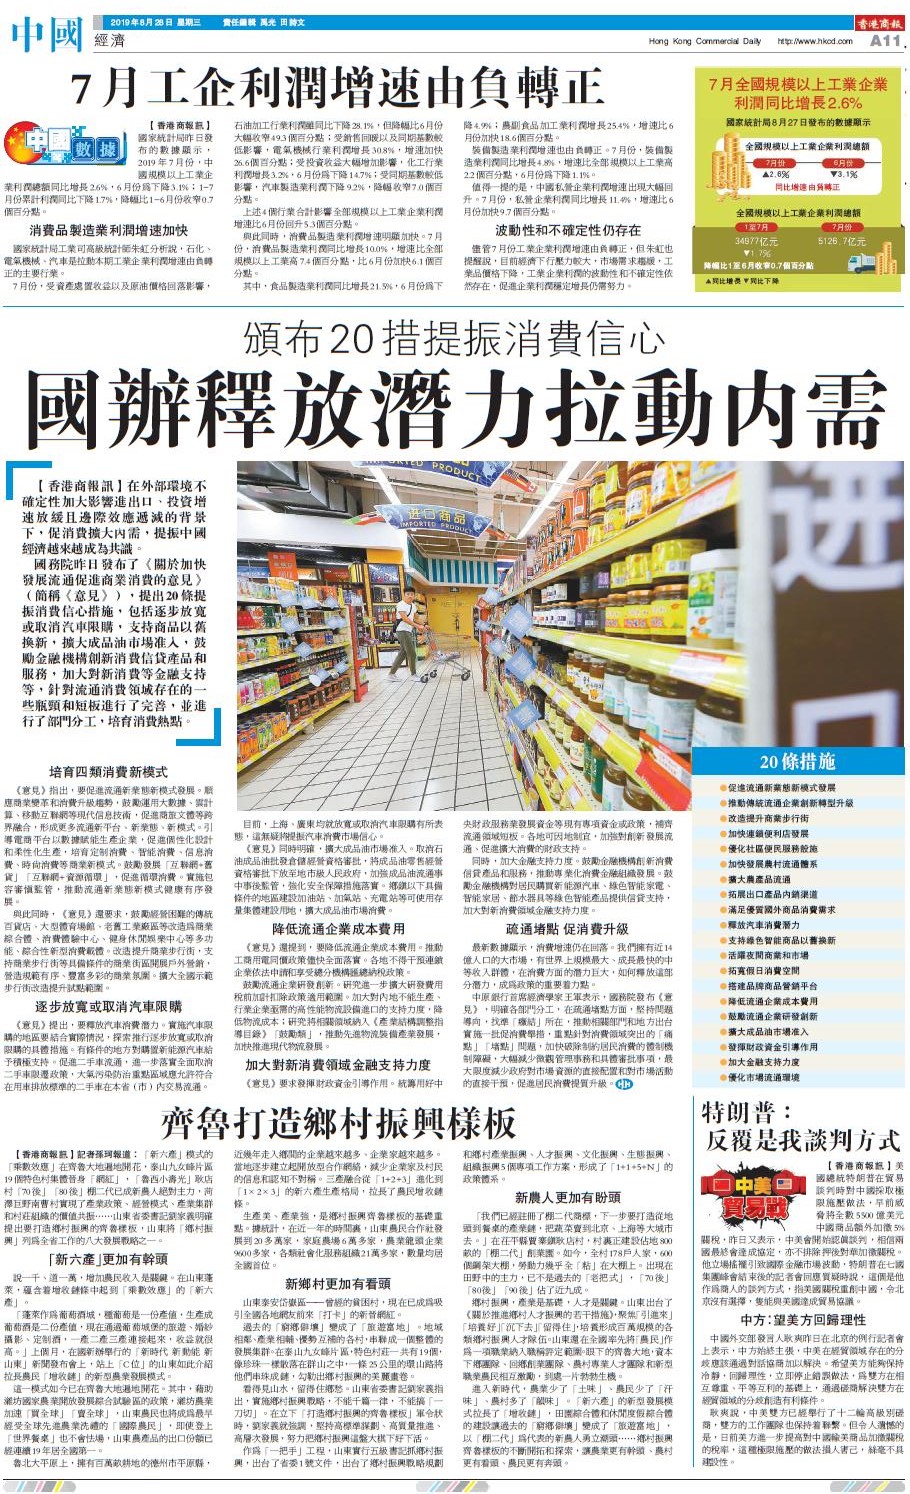 08月28日香港商报A11